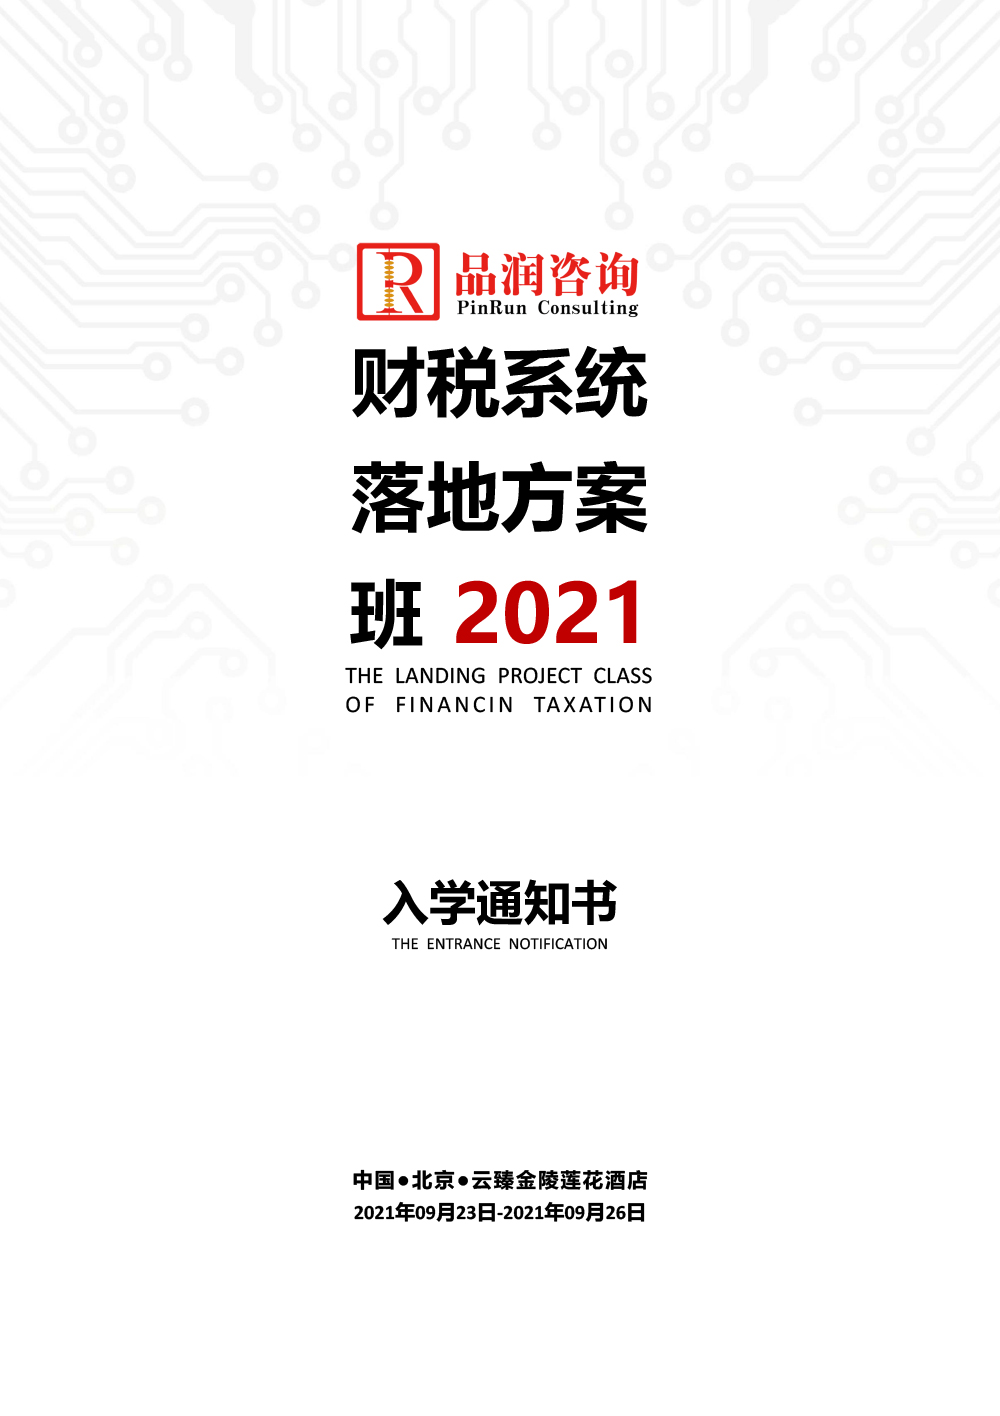 2021.09.23-26北京第123期《财税系统落地方案班》入学通知书